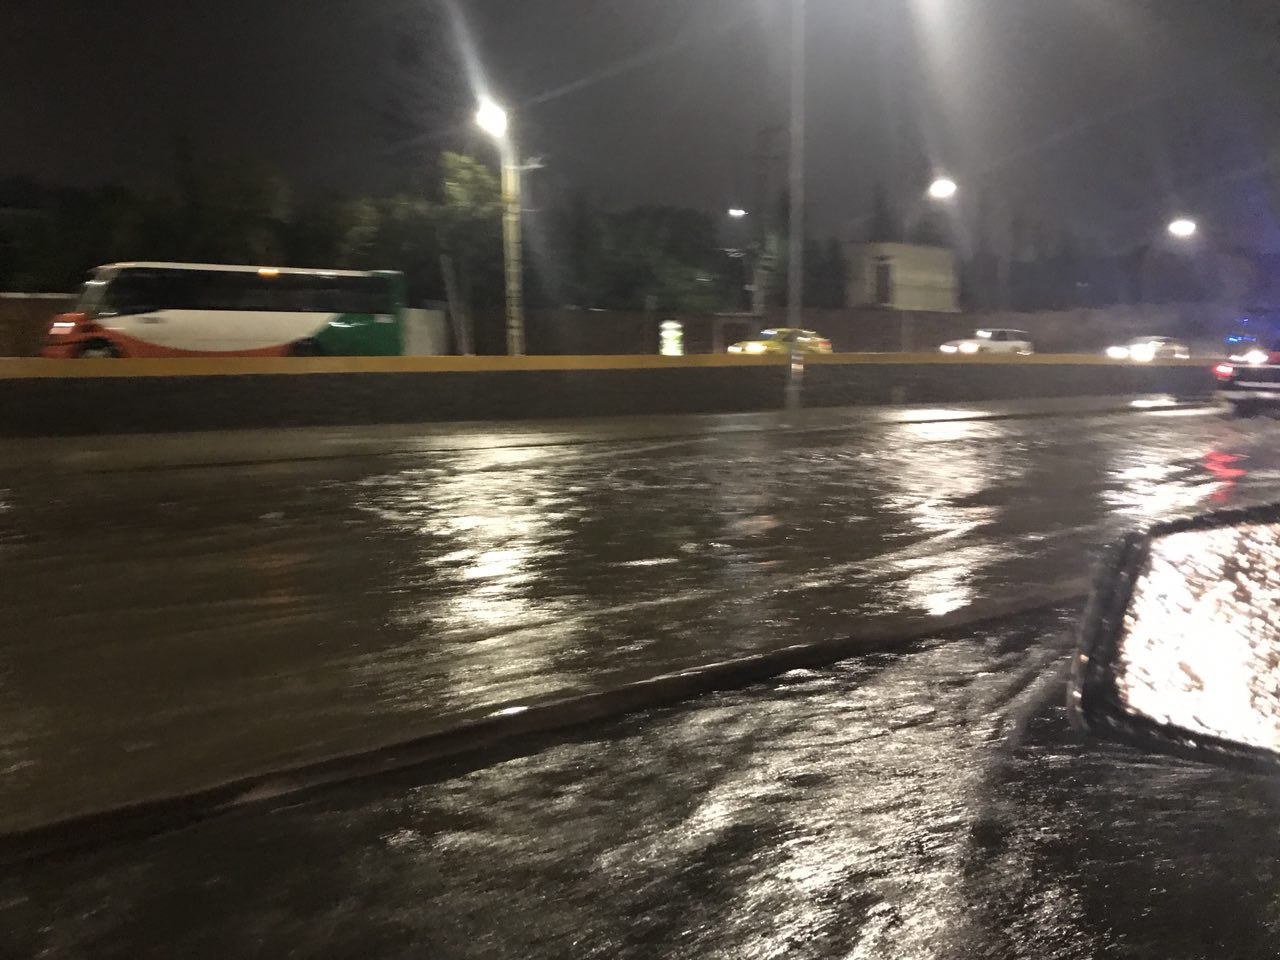  Otra vez… cierran carriles centrales de Bernardo Quintana por inundación